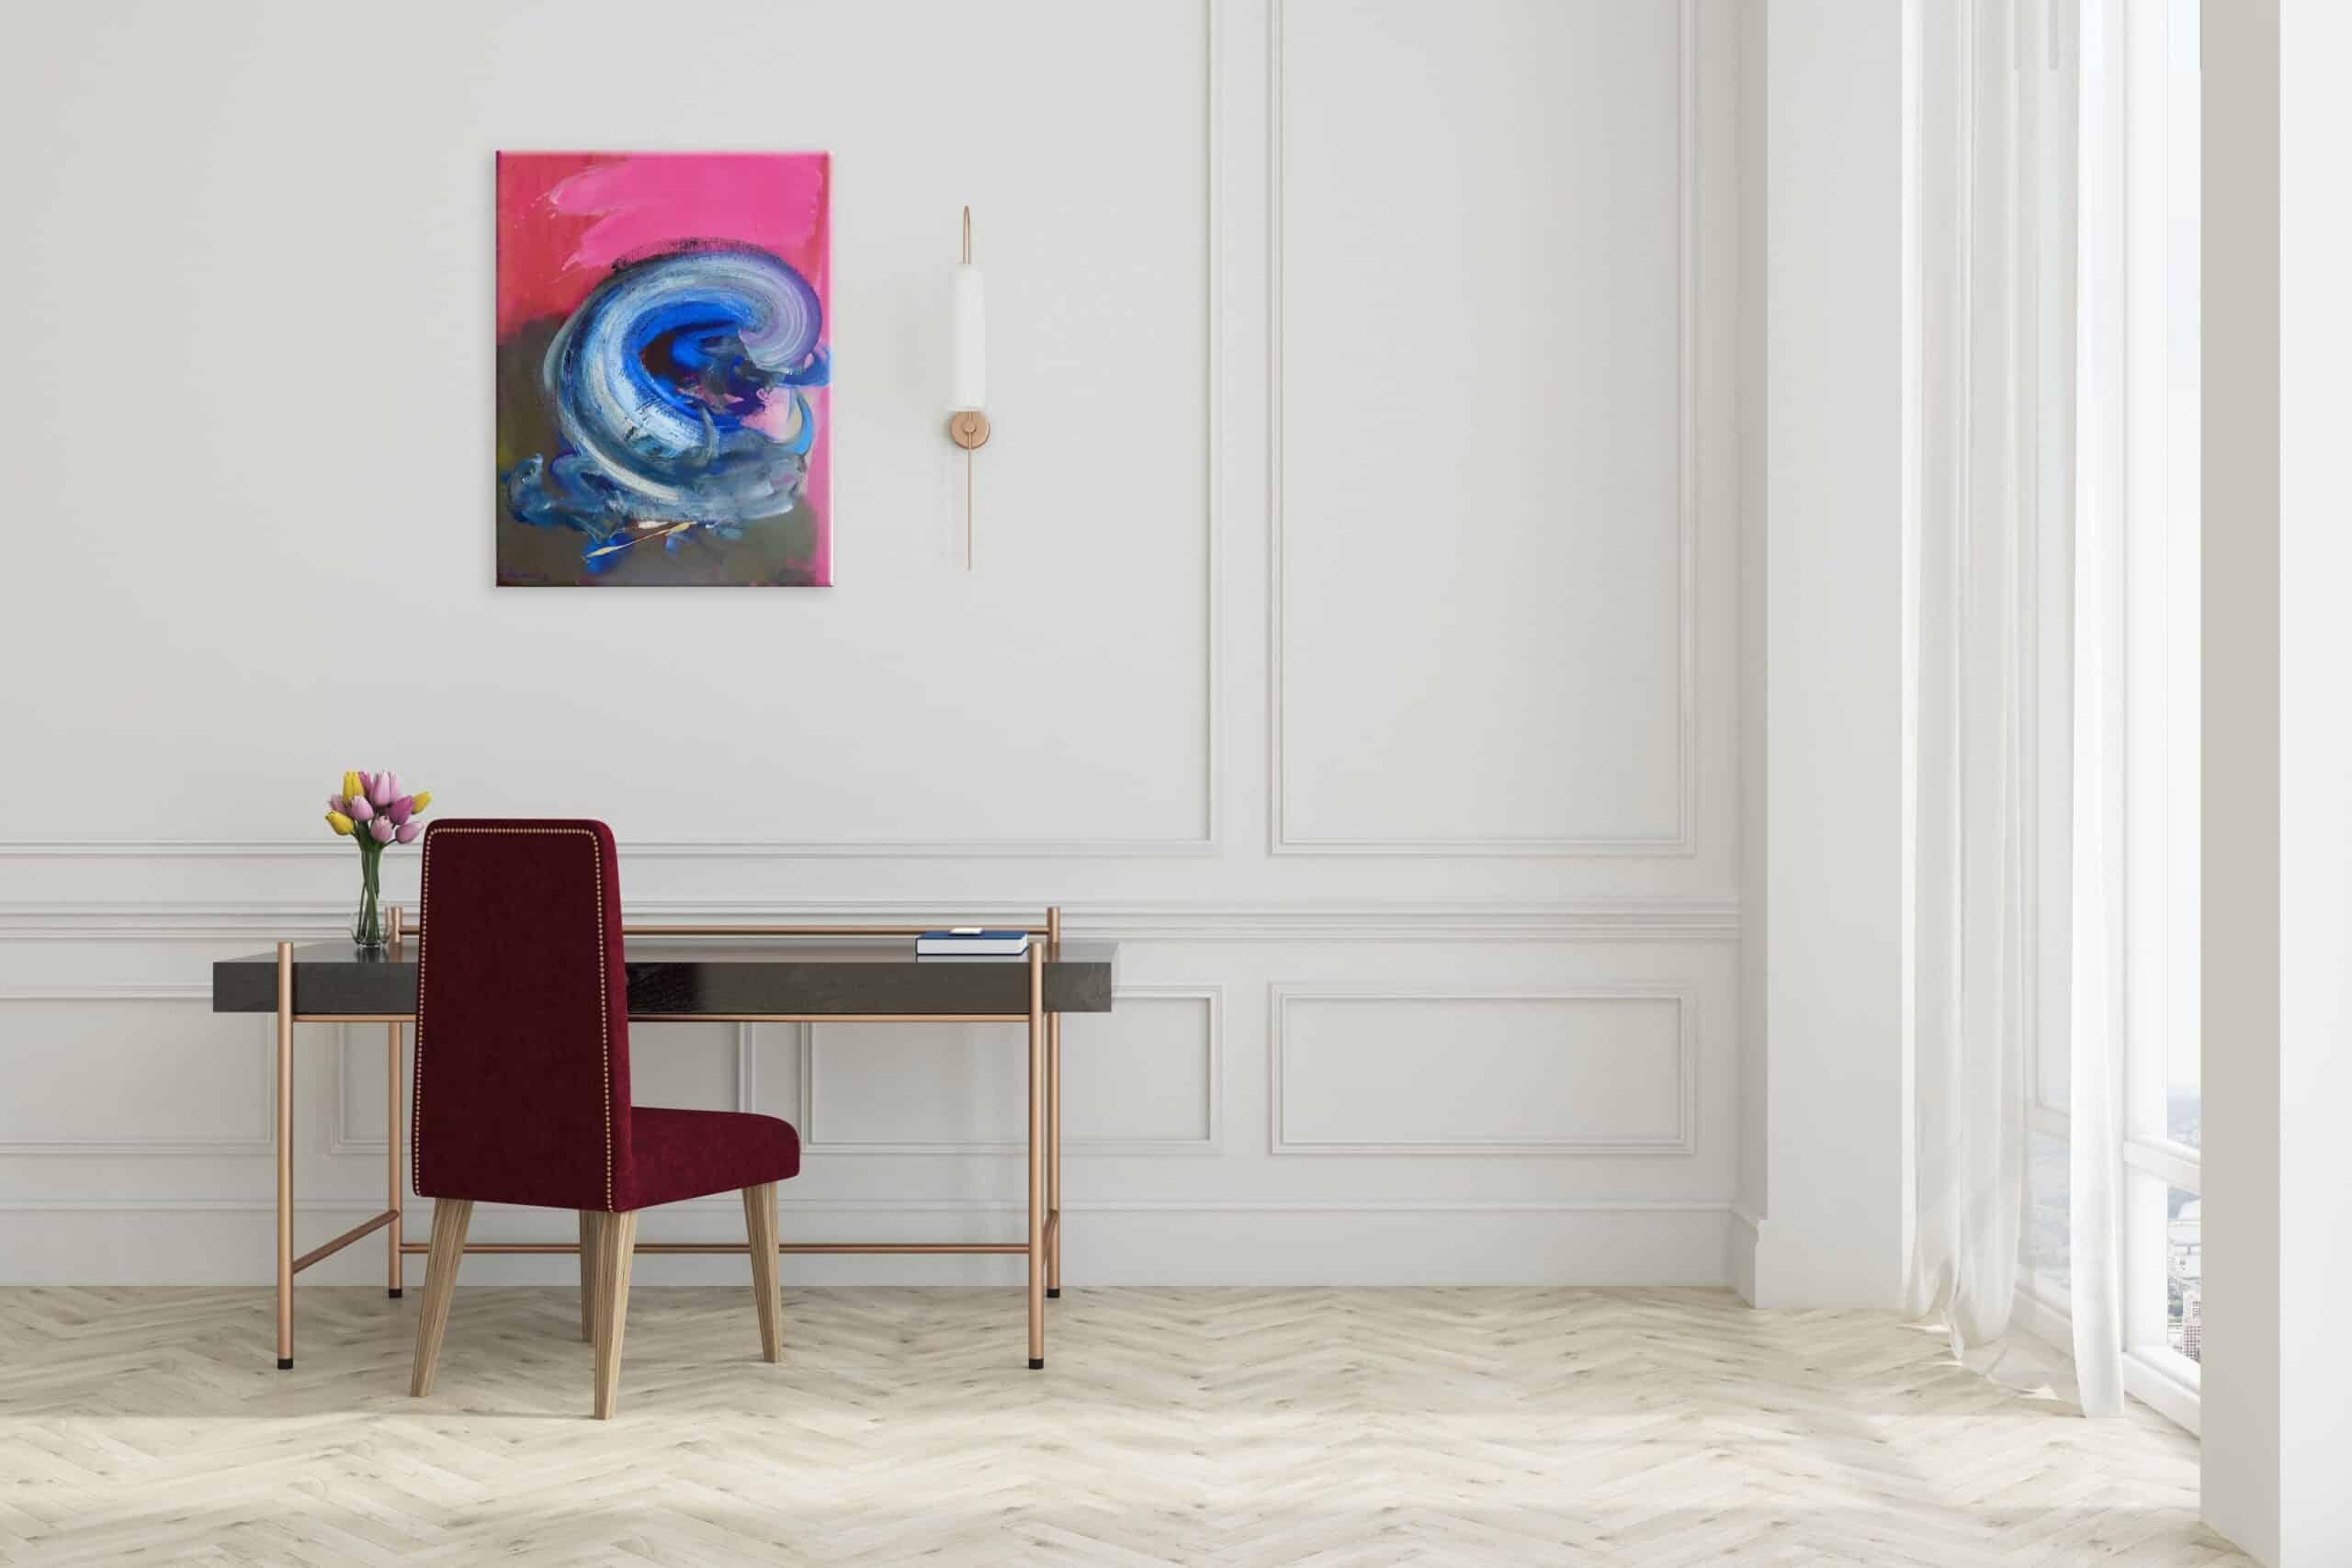 Taureau X est une peinture acrylique sur toile unique de l'artiste contemporain Christophe Dupety, dont les dimensions sont de 65 × 50 cm (25,6 × 19,7 in).
L'œuvre est signée, vendue non encadrée et accompagnée d'un certificat